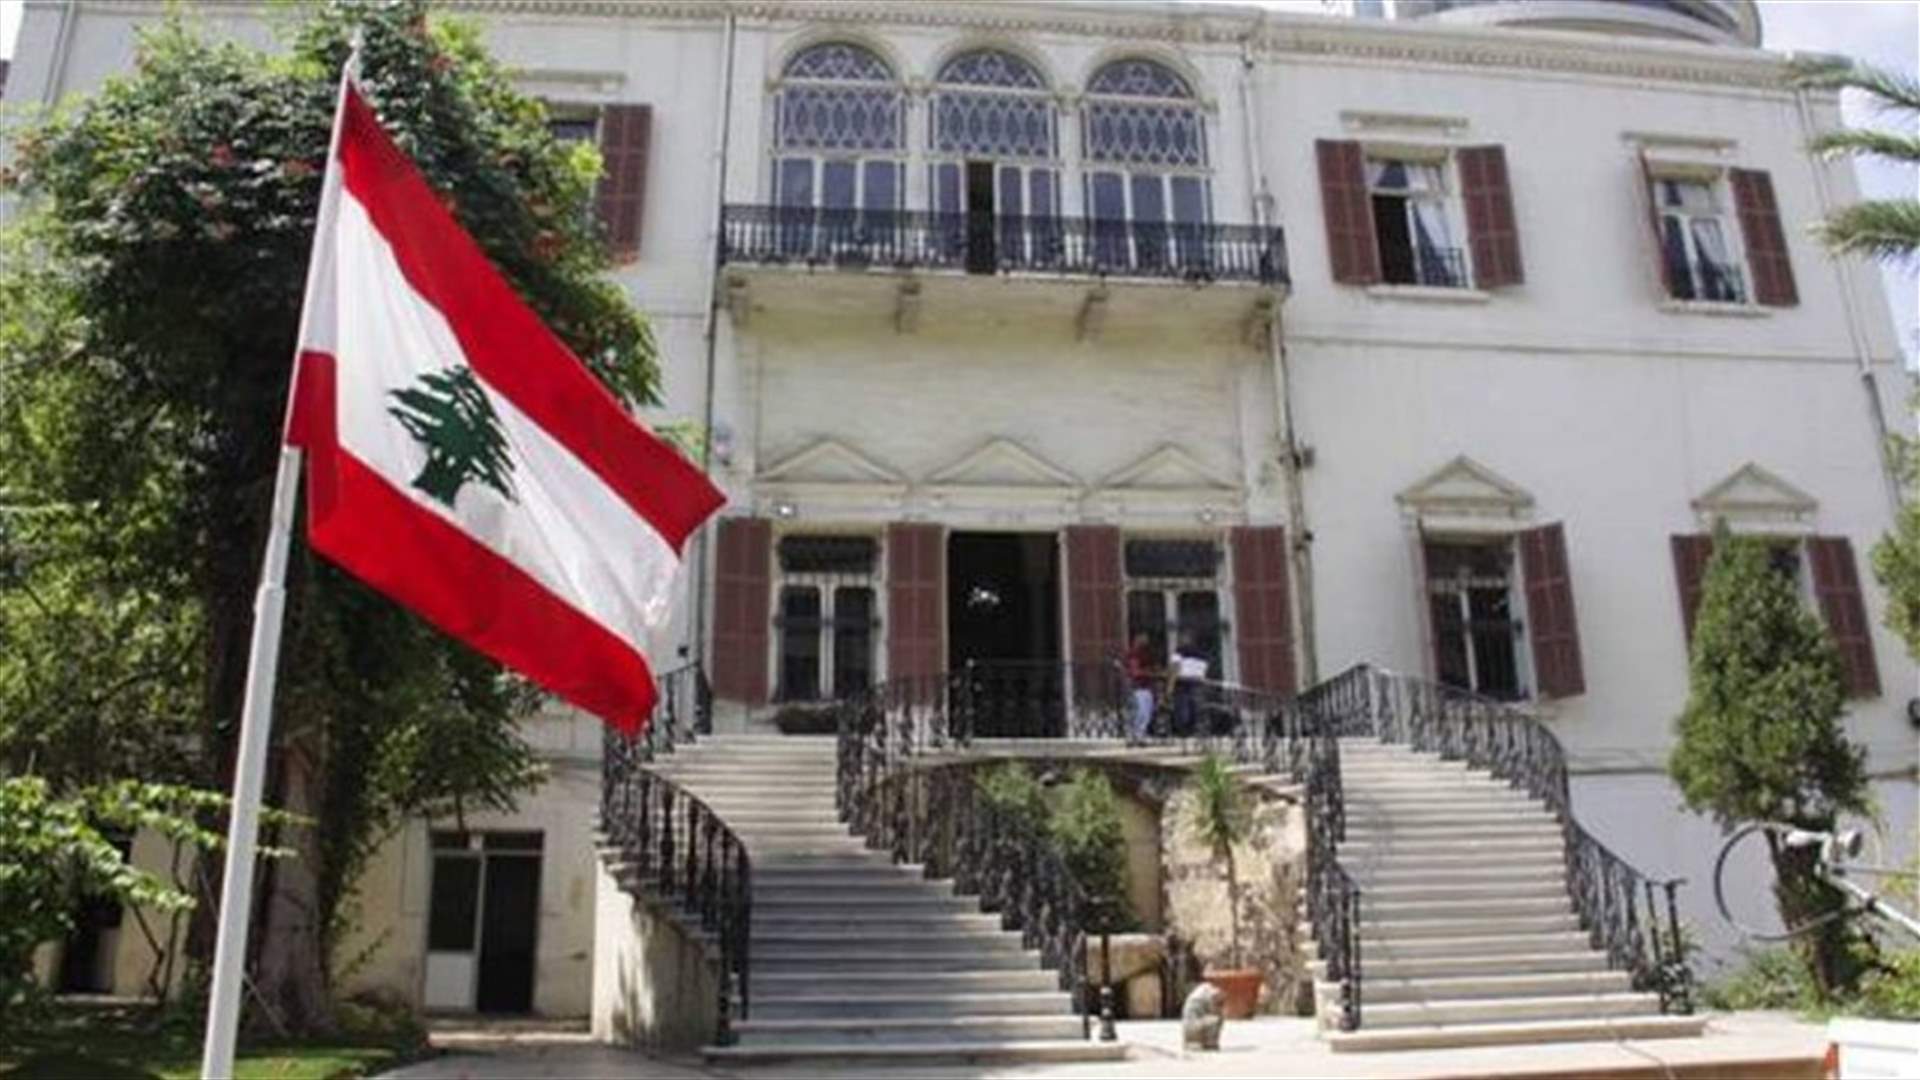 كيف يمكن للطلاب اللبنانيين الراغبين بالعودة الى لبنان تسجيل معلوماتهم؟